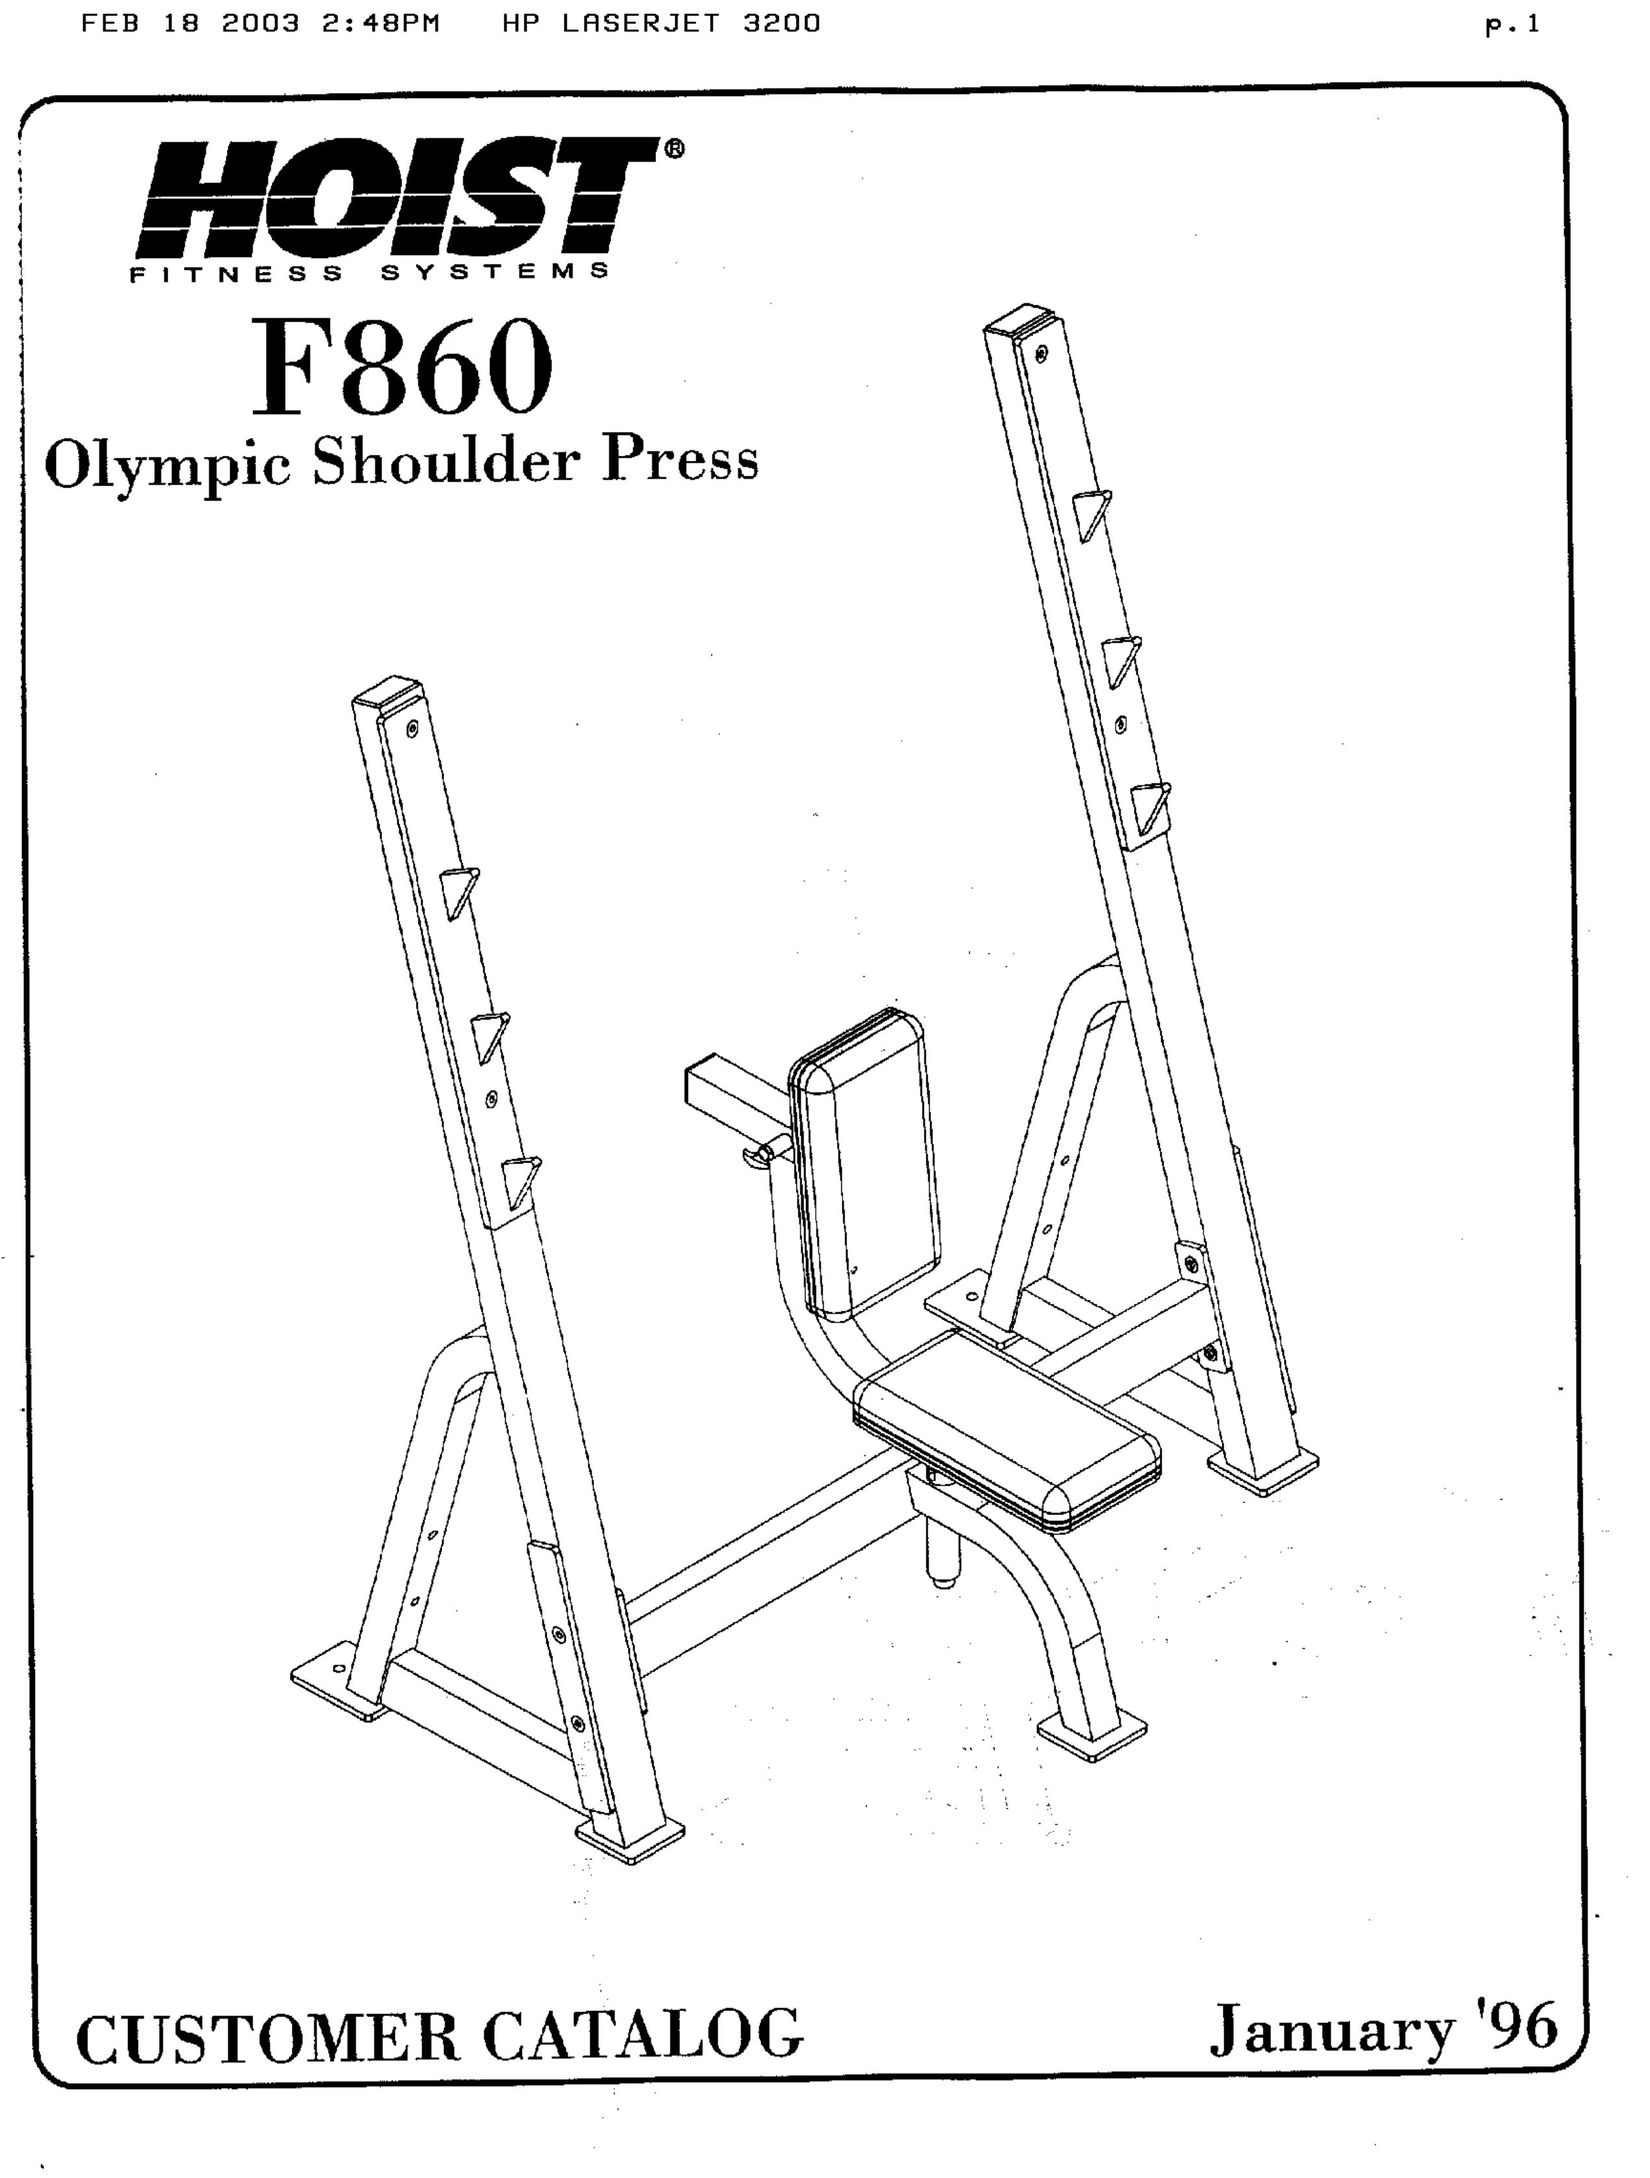 Hoist Fitness f860 Fitness Equipment User Manual